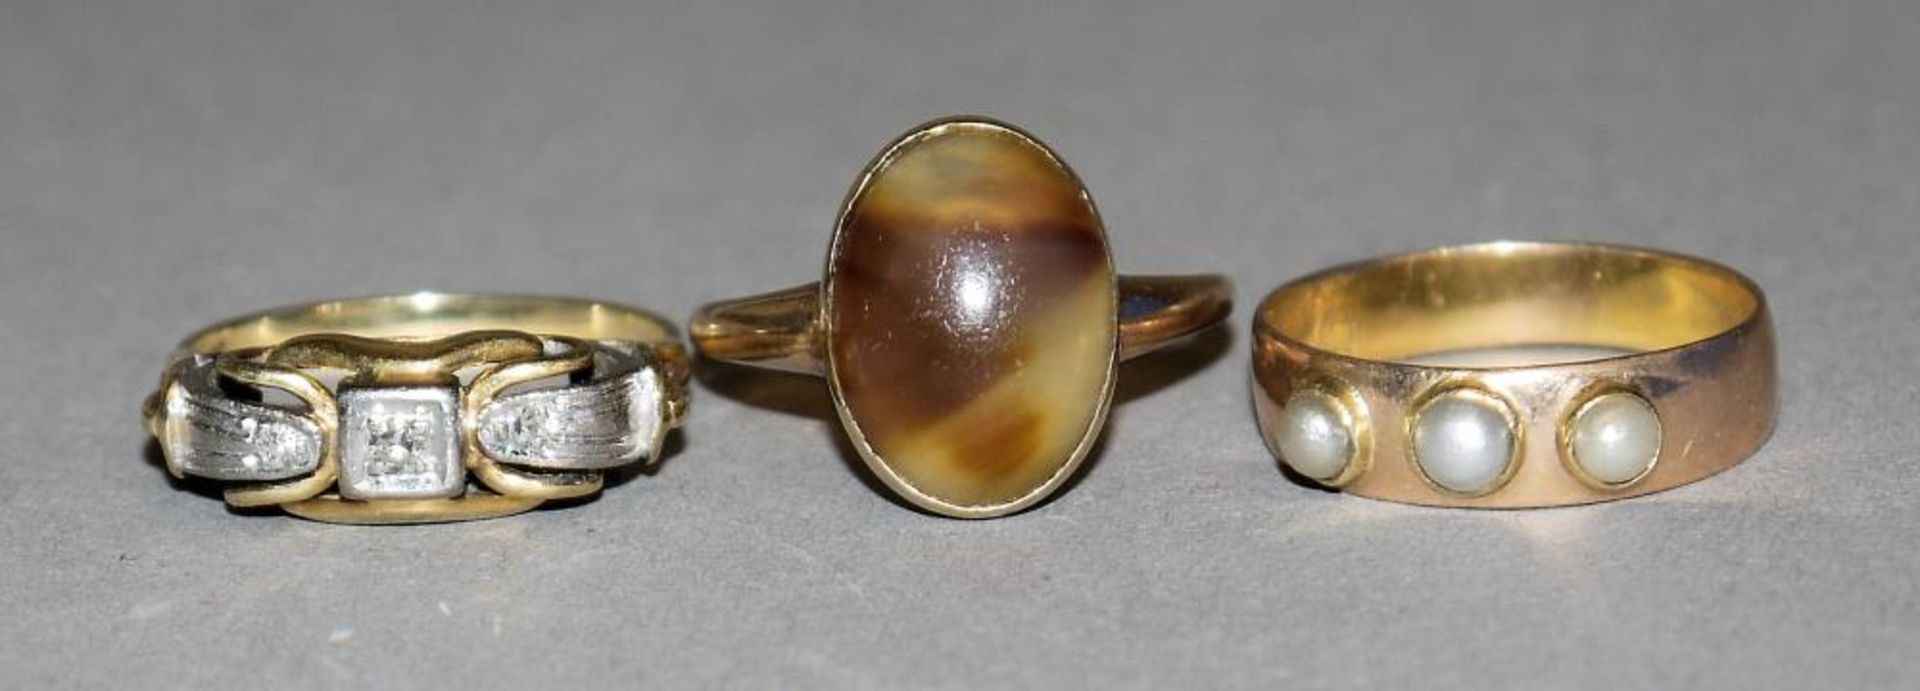 Drei Ringe mit Brillanten, Perlchen u. Achat ab 1920 Ring, 14kt Gelb- u. Weißgold, besetzt mit 3